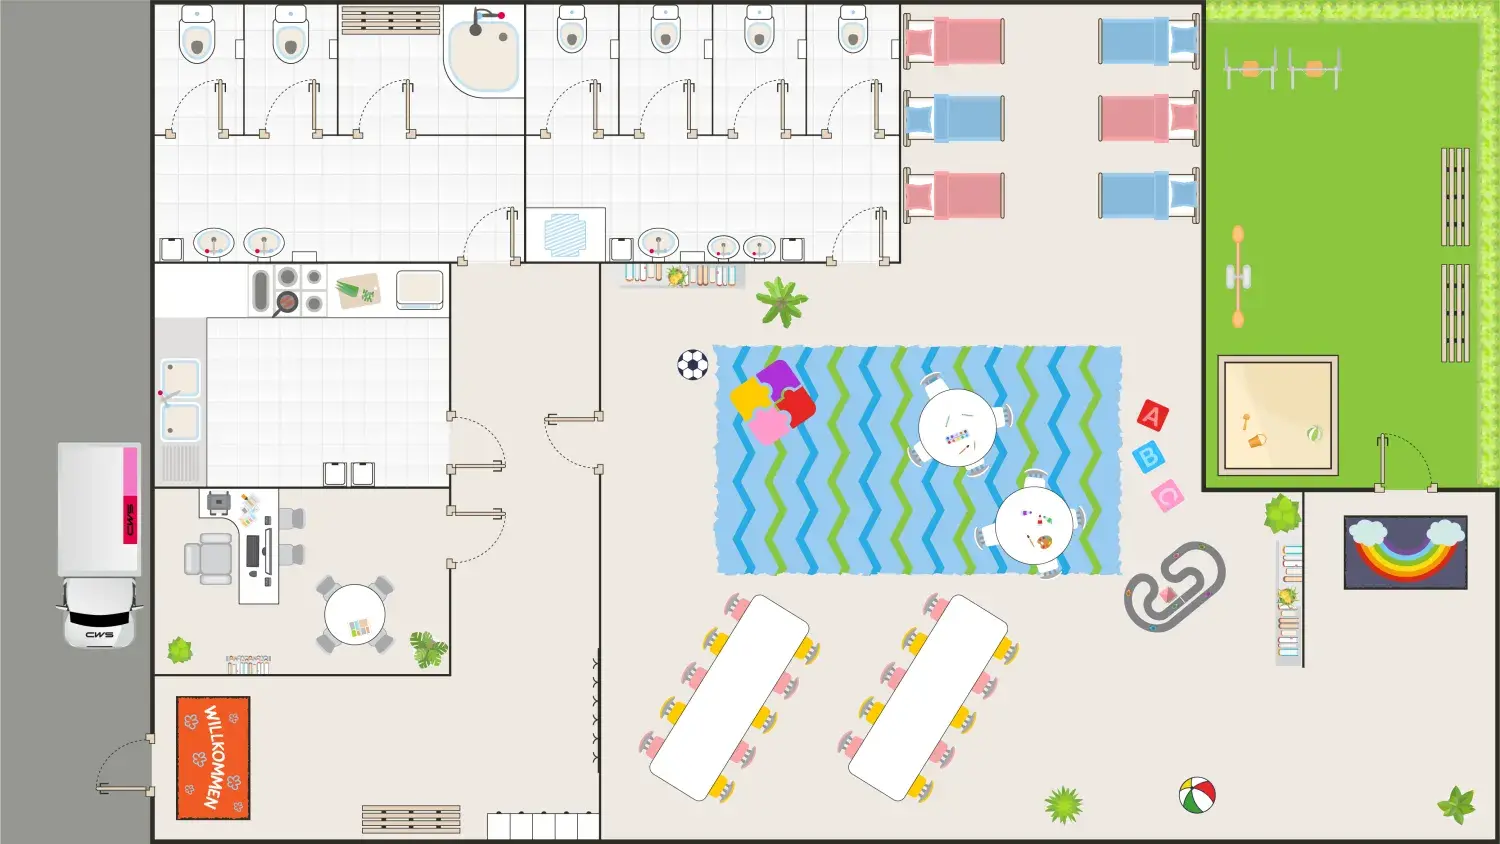 Interaktiver Raumplan einer Kindertagesstätte